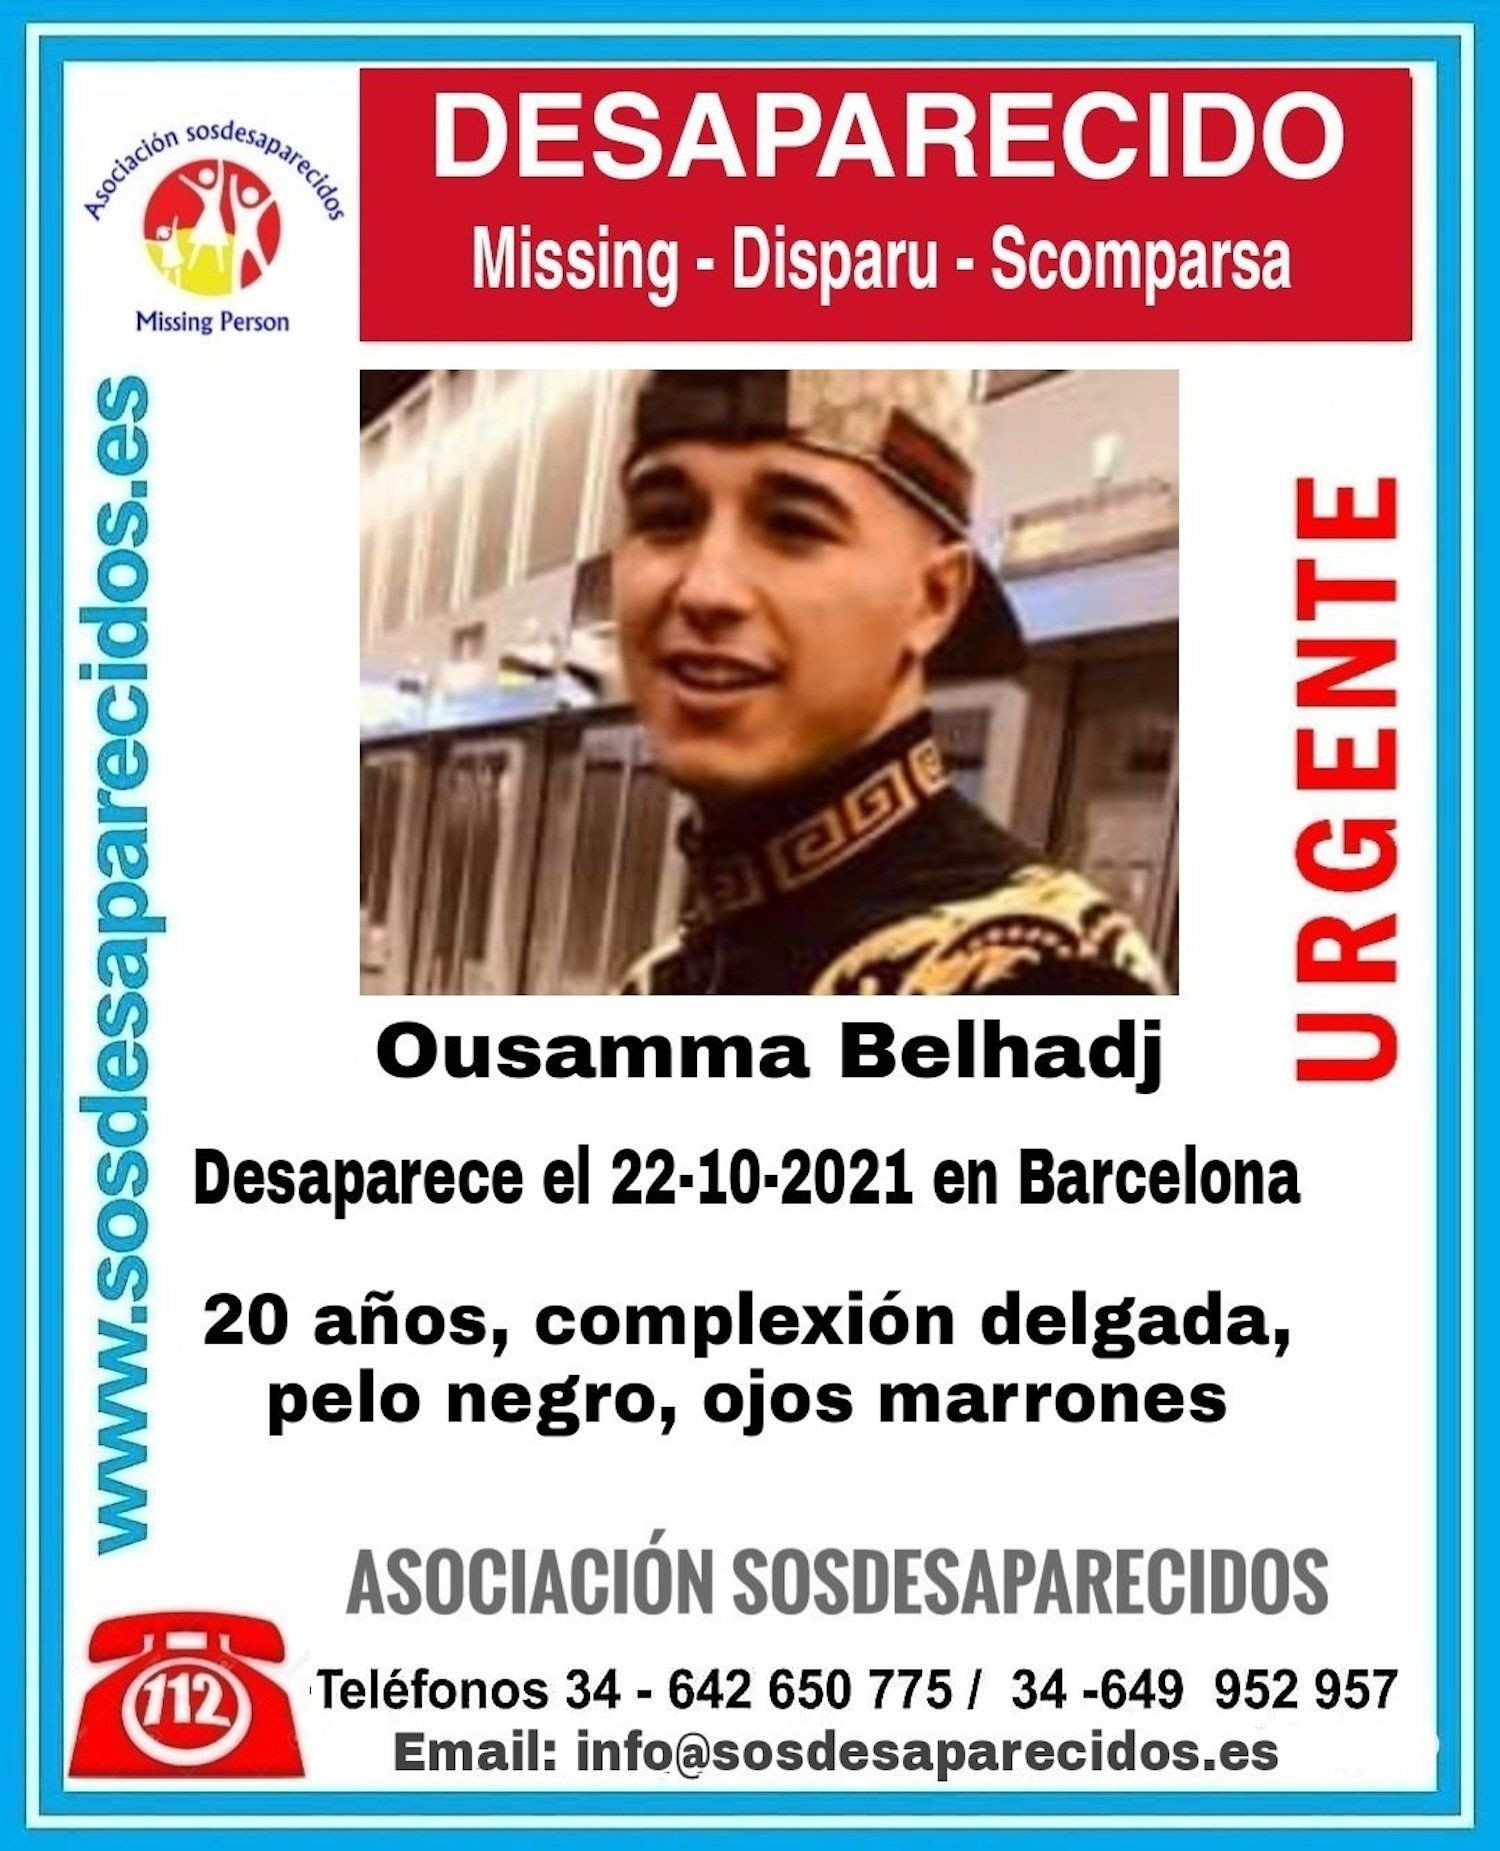 Ousamma Belhadj, el joven desaparecido
desde hace 10 días en Barcelona / SOS DESAPARECIDOS